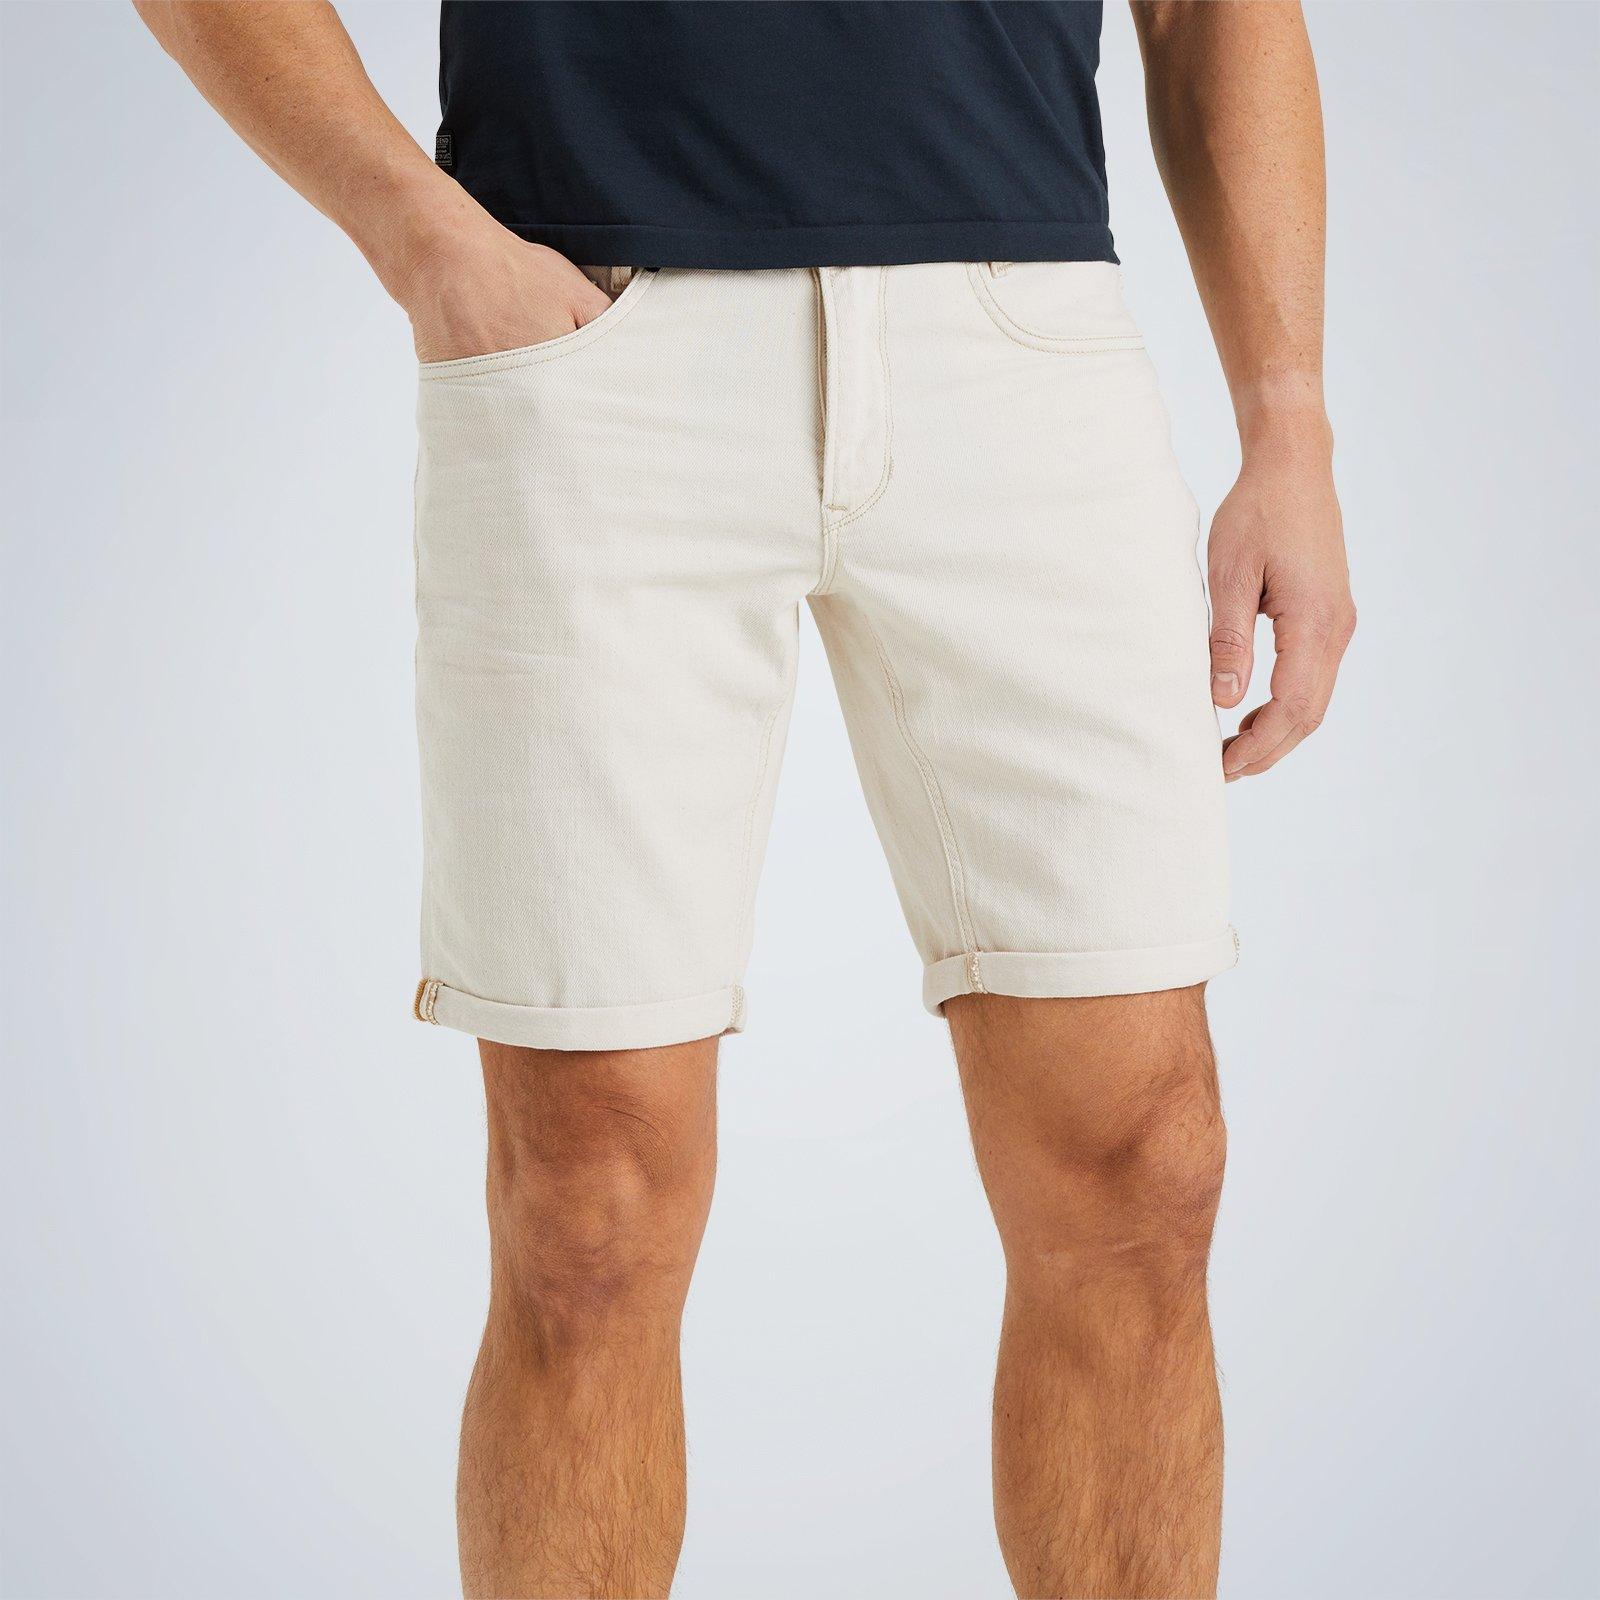 PME Legend Airgen shorts